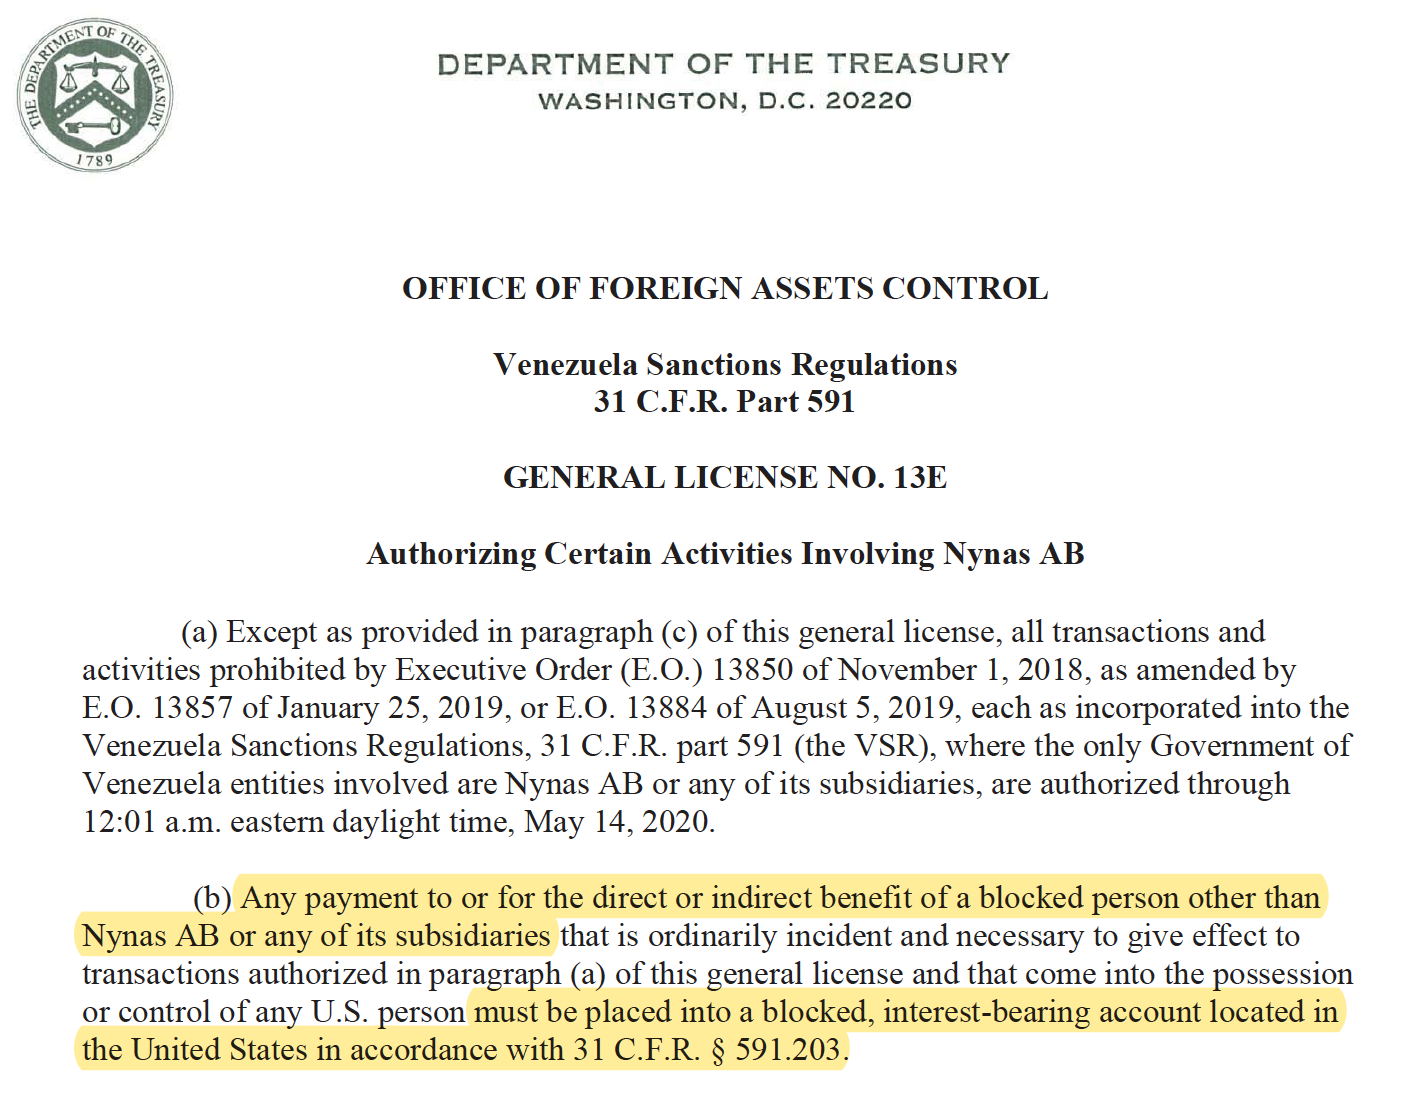 Nynas reorganisation Treasury License